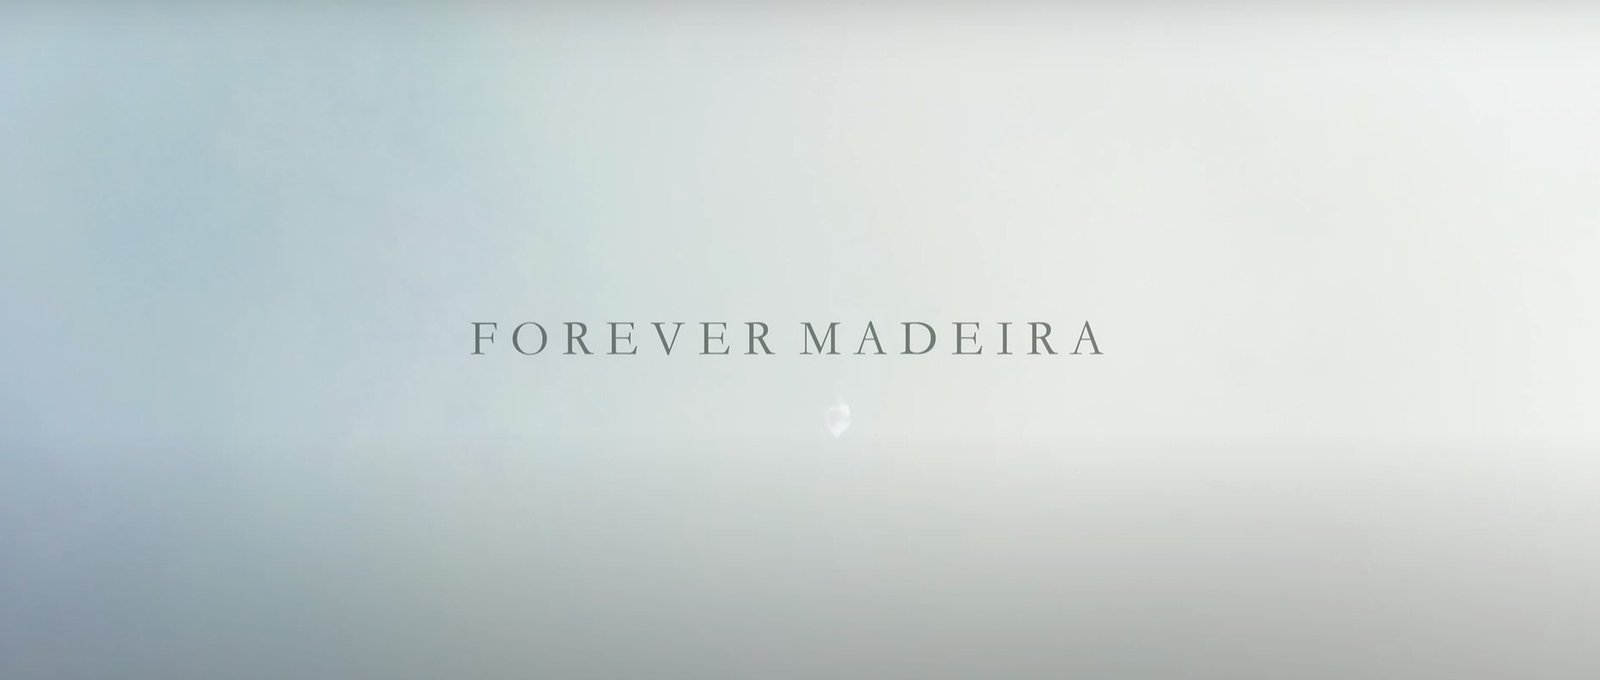 FOREVER MADEIRA